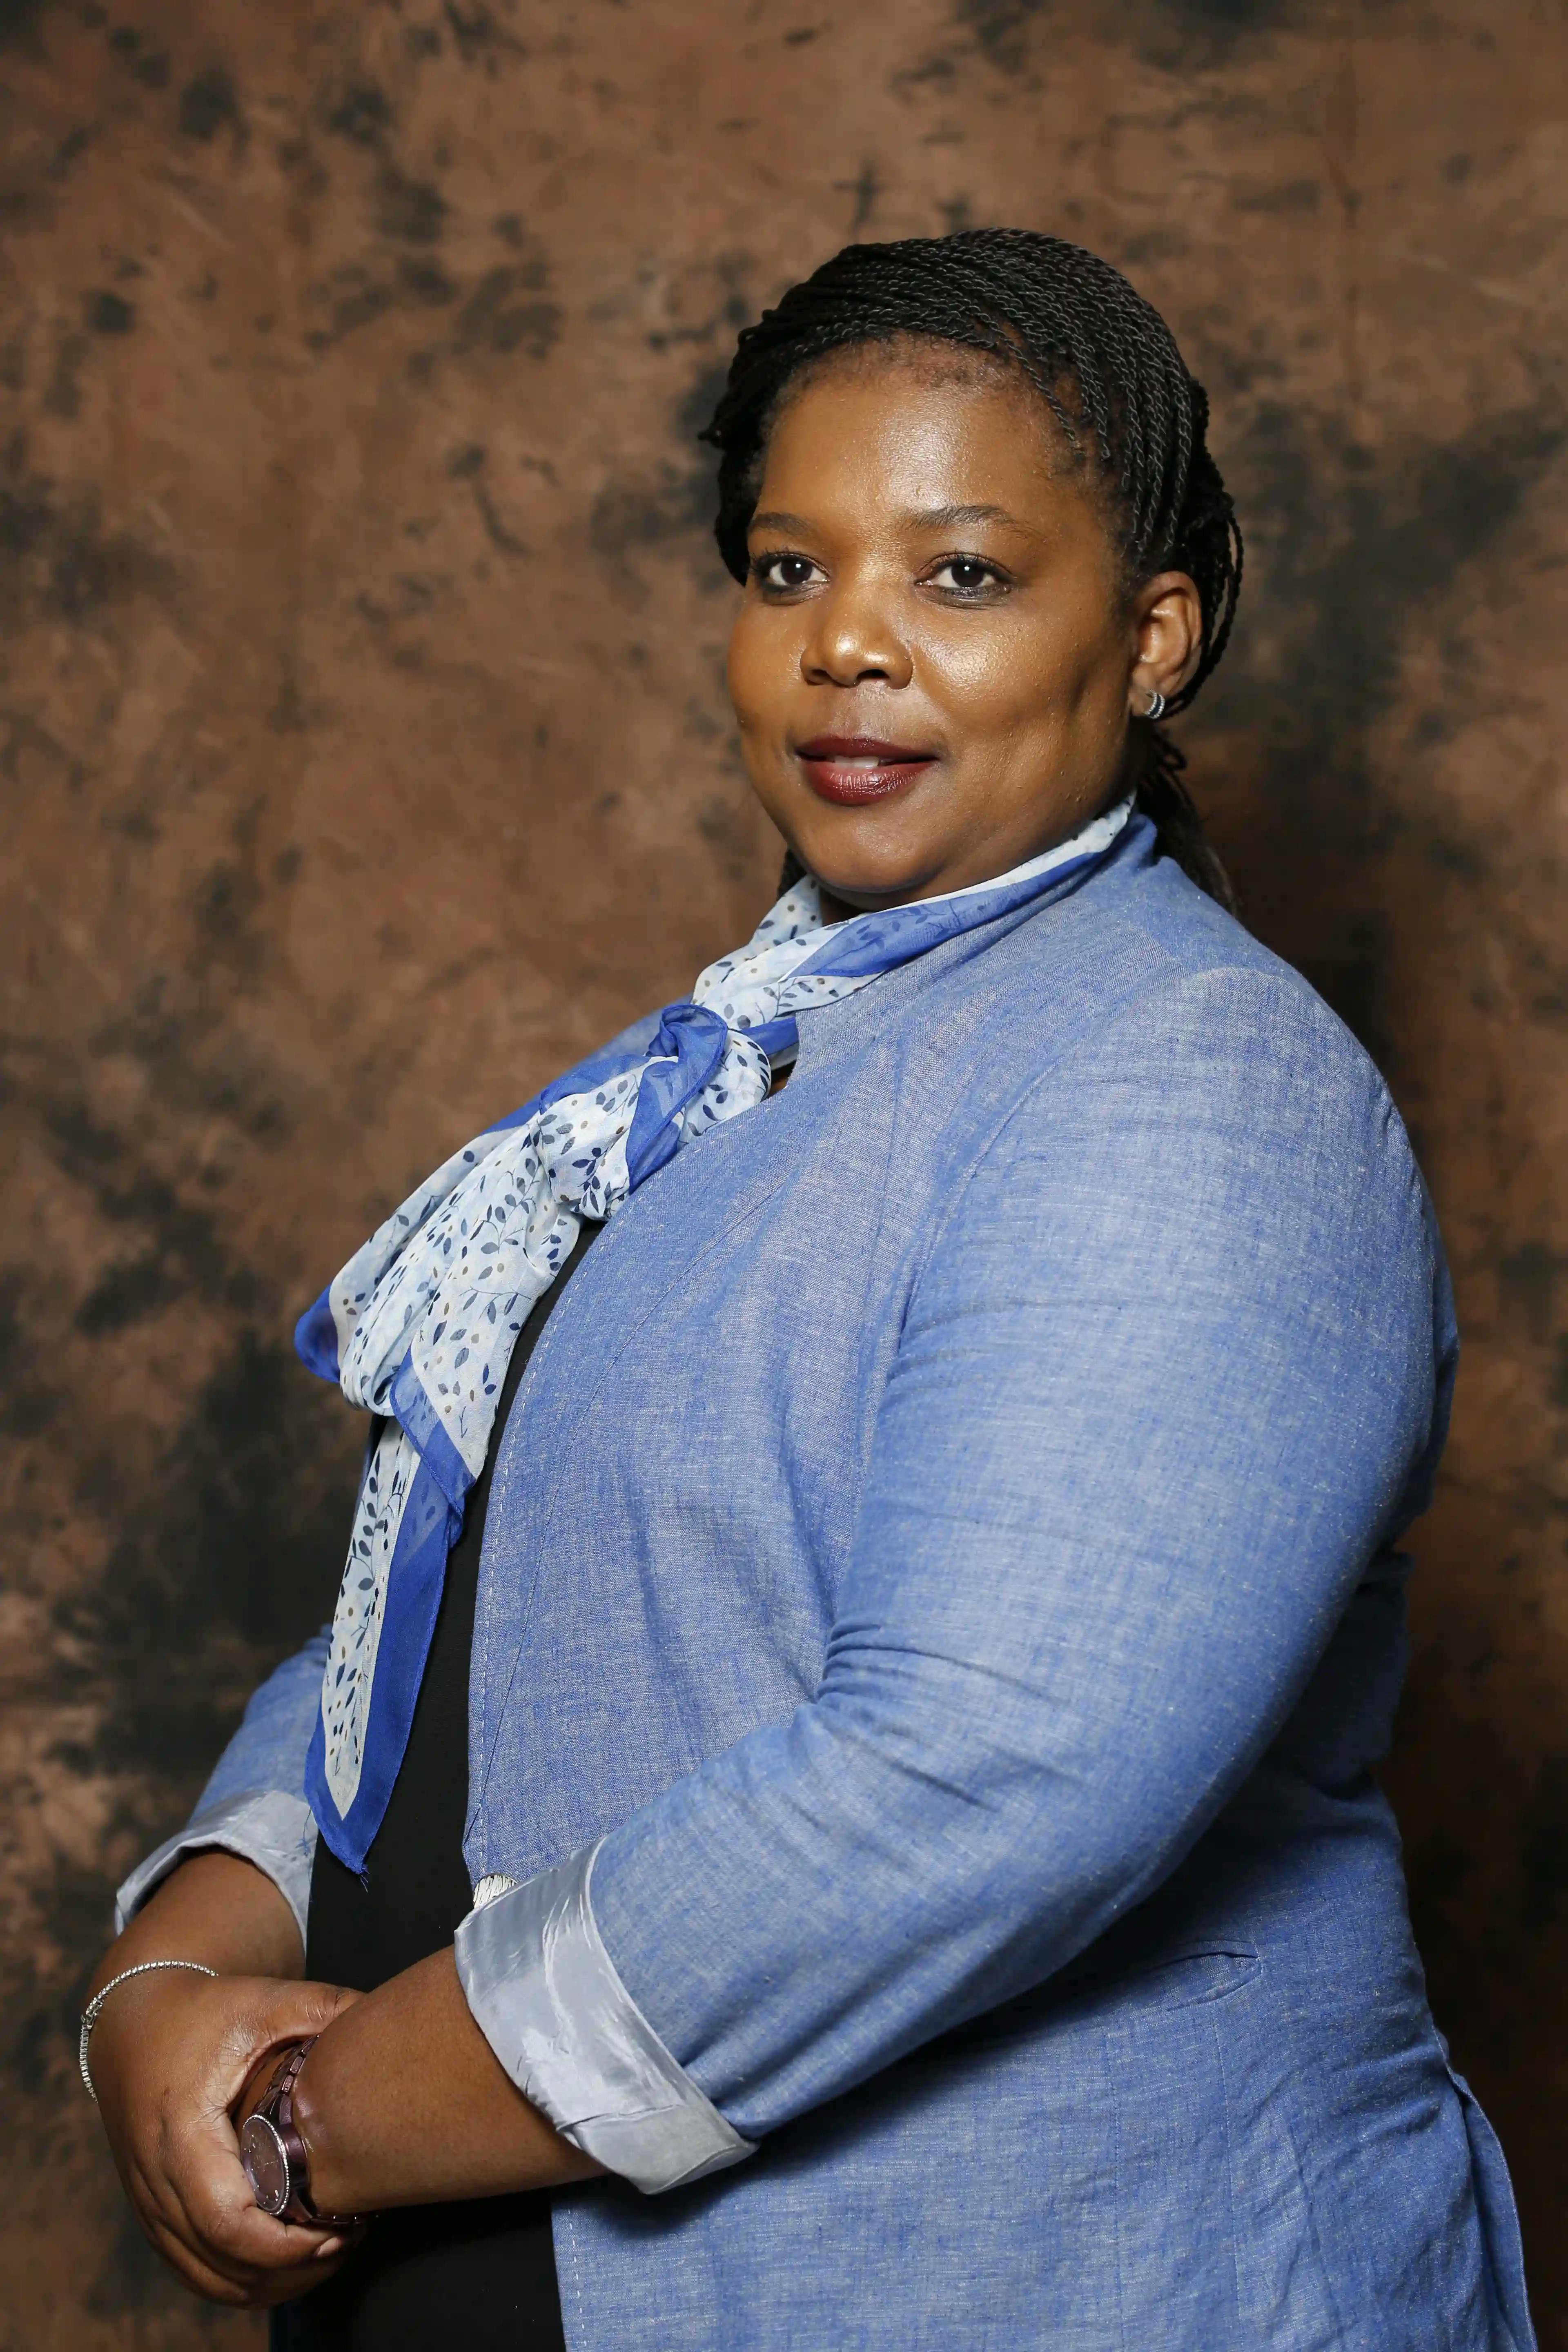 Ms N Ntshanga